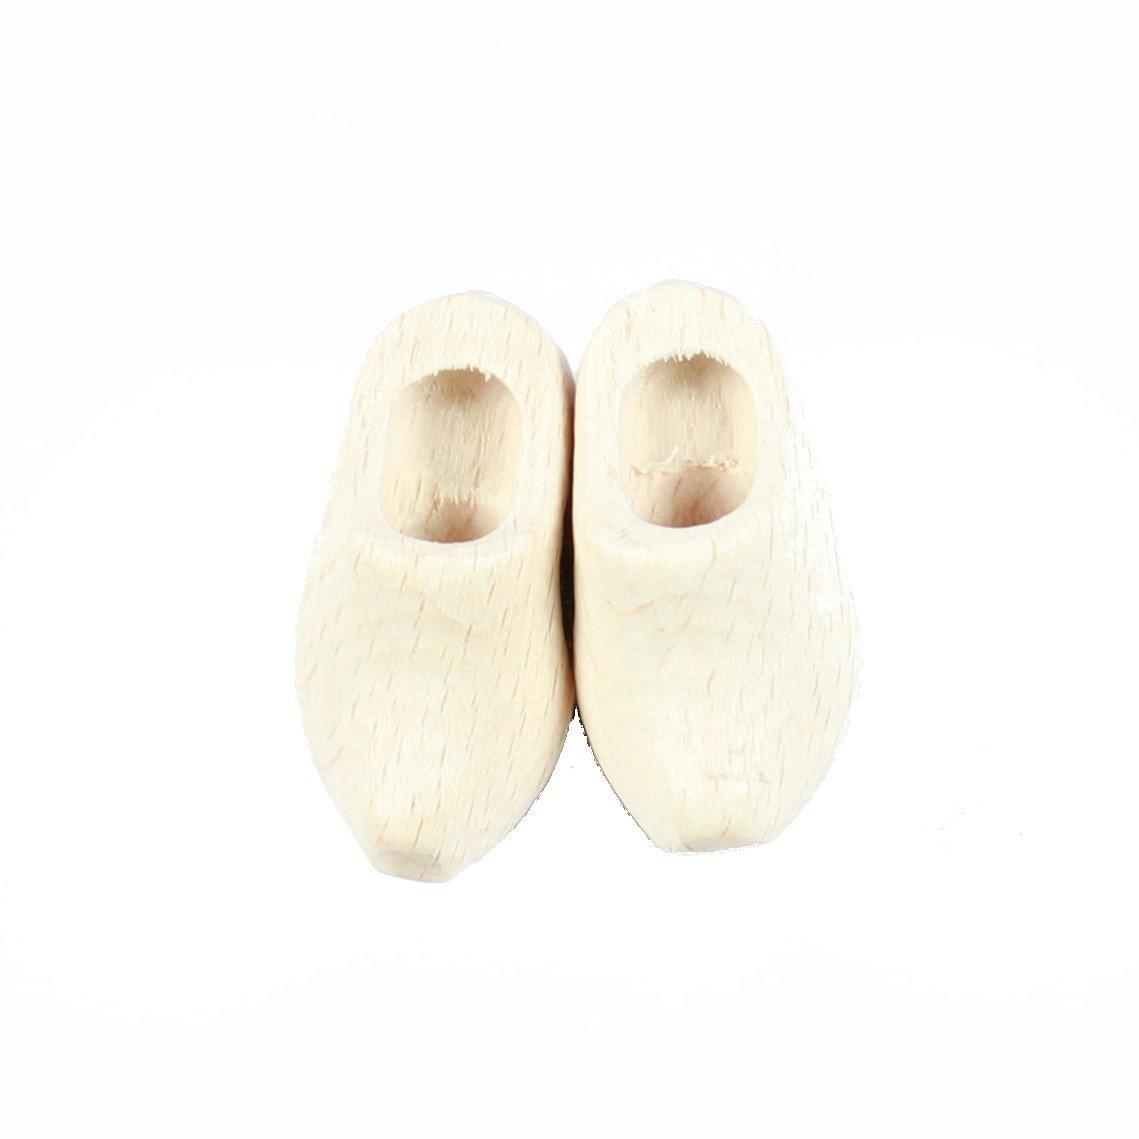 Wooden Shoes Fridge Magnet Plain